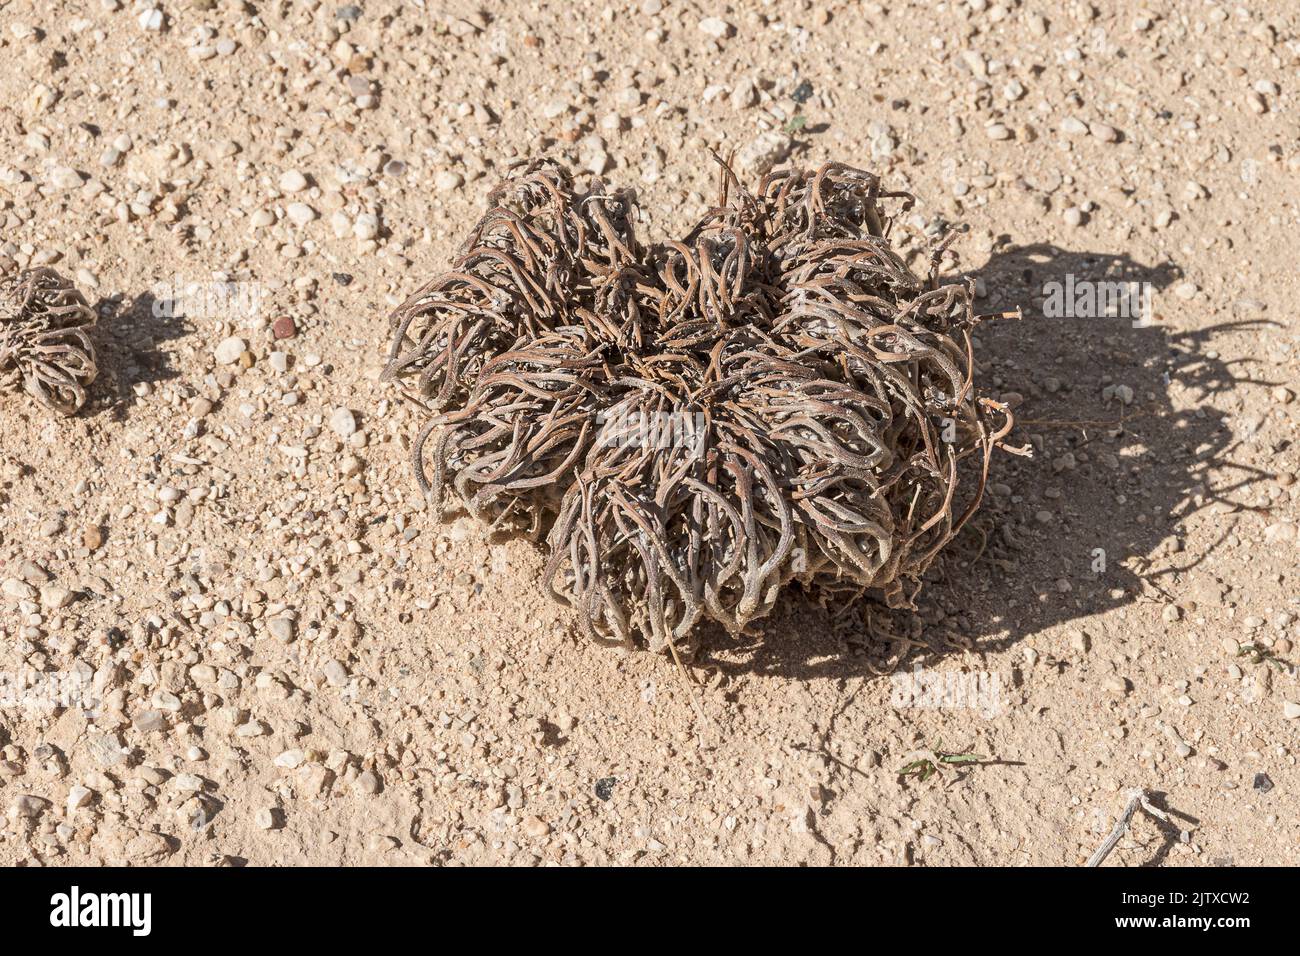 Todaussehende echte Rose von Hierochuntica Anastasica Pflanze im ruhenden Zustand in einem extrem öden Lebensraum in der Arava Wüste in Israel Stockfoto